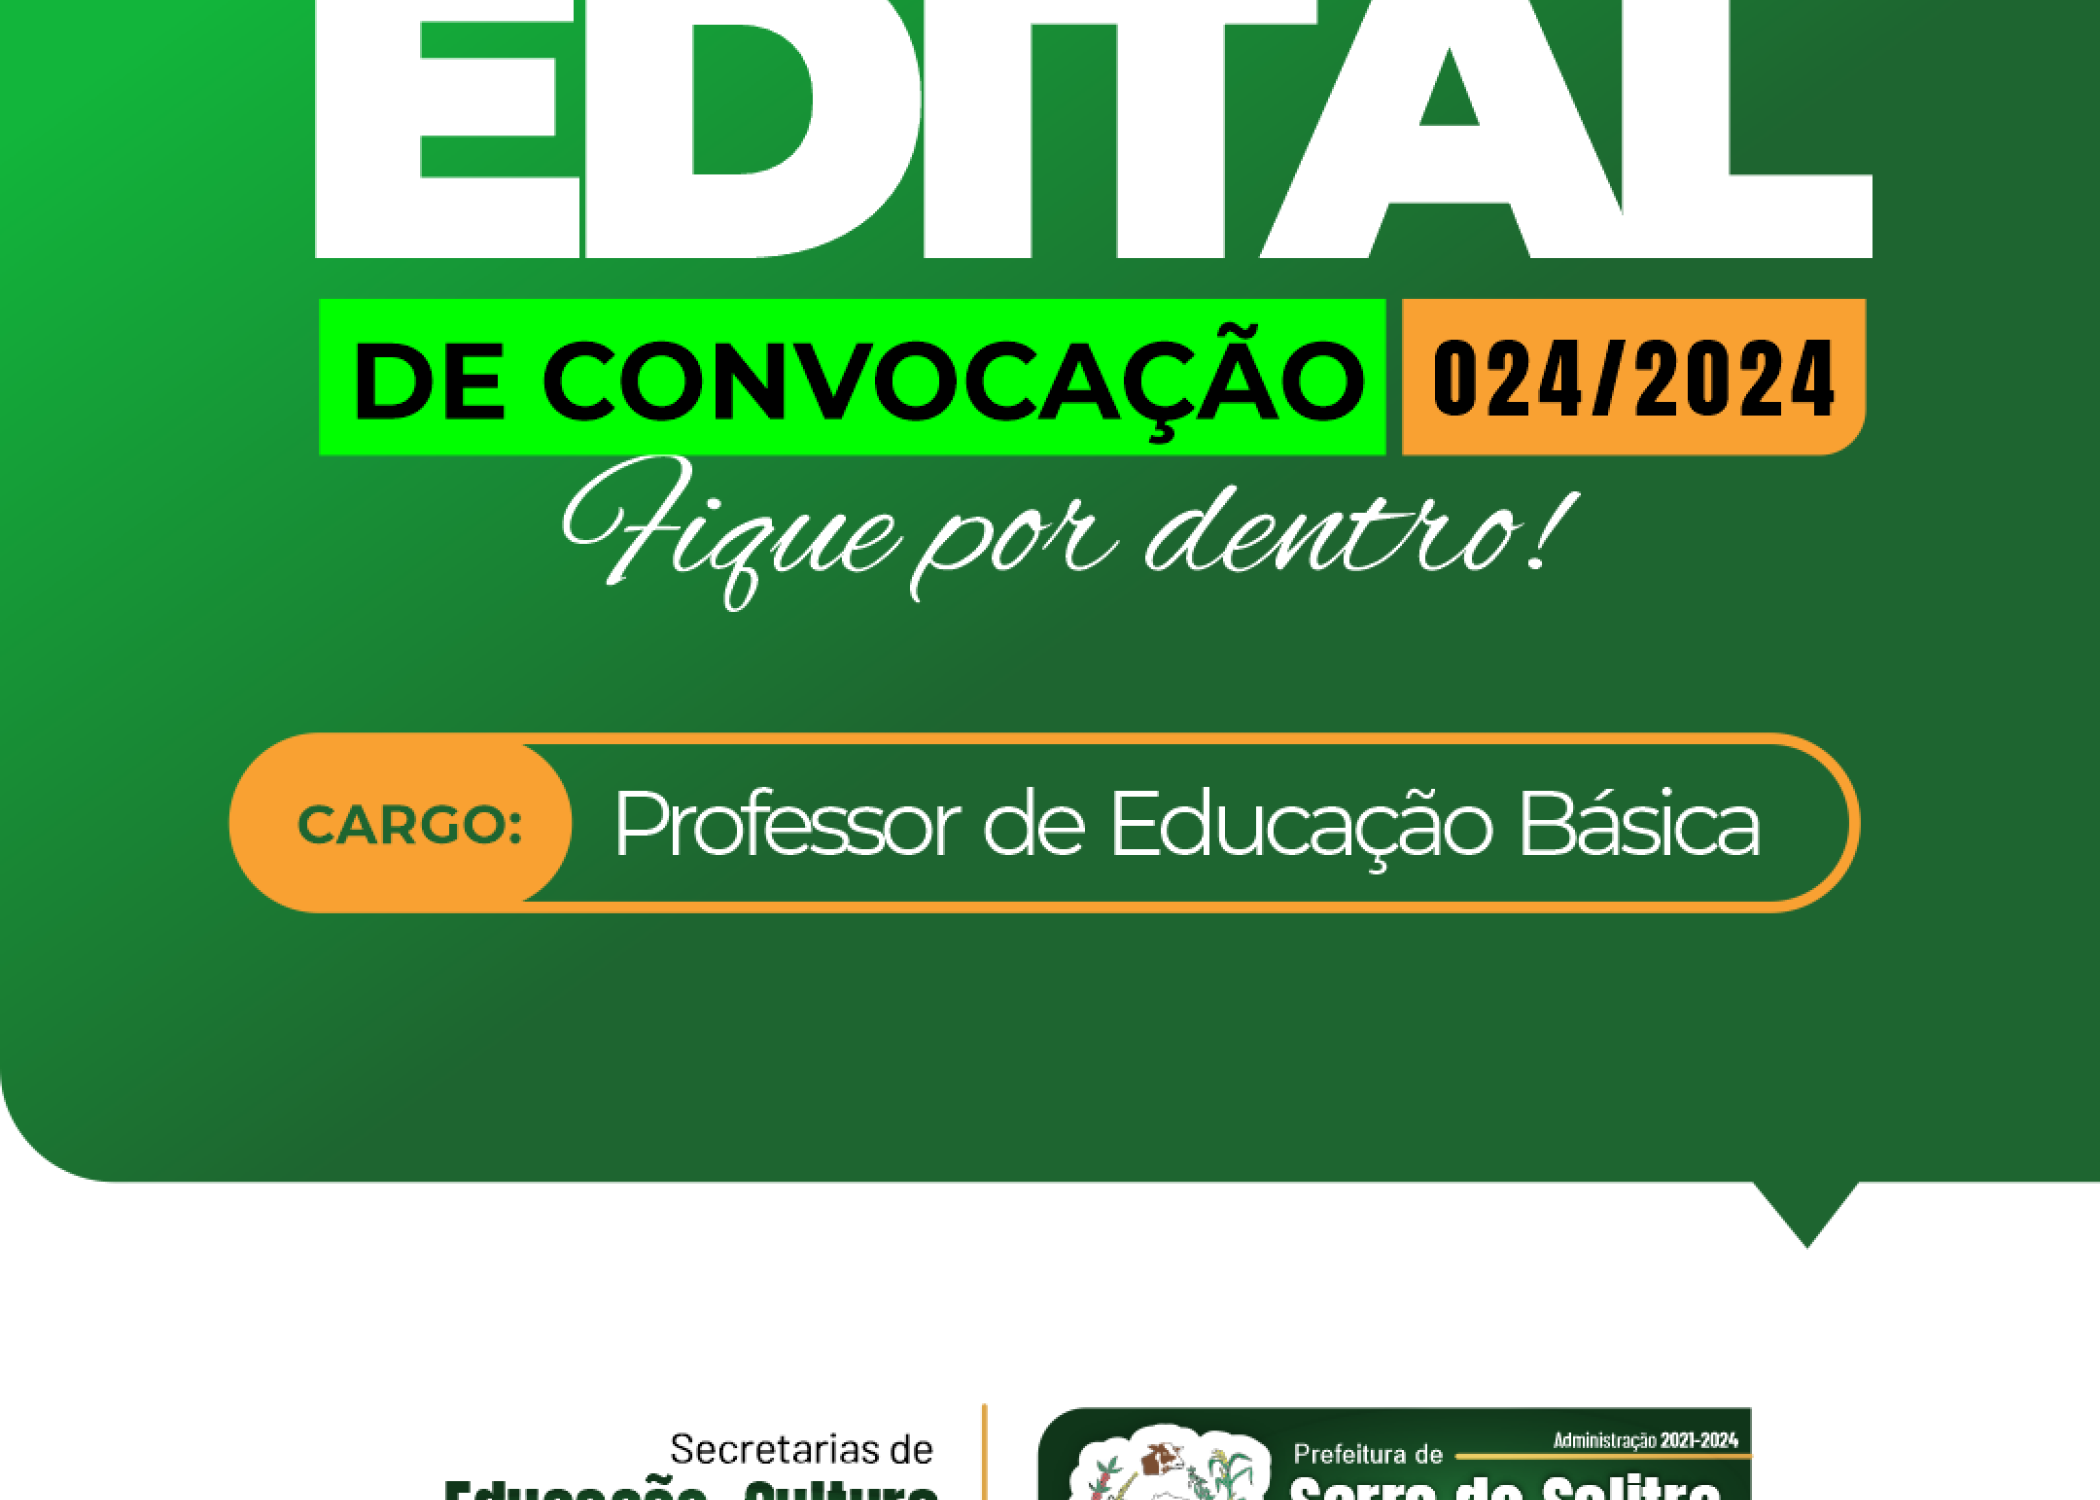 EDITAL DE CONVOCAÇÃO 024/2024 - PROFESSOR DE EDUCAÇÃO BÁSICA 